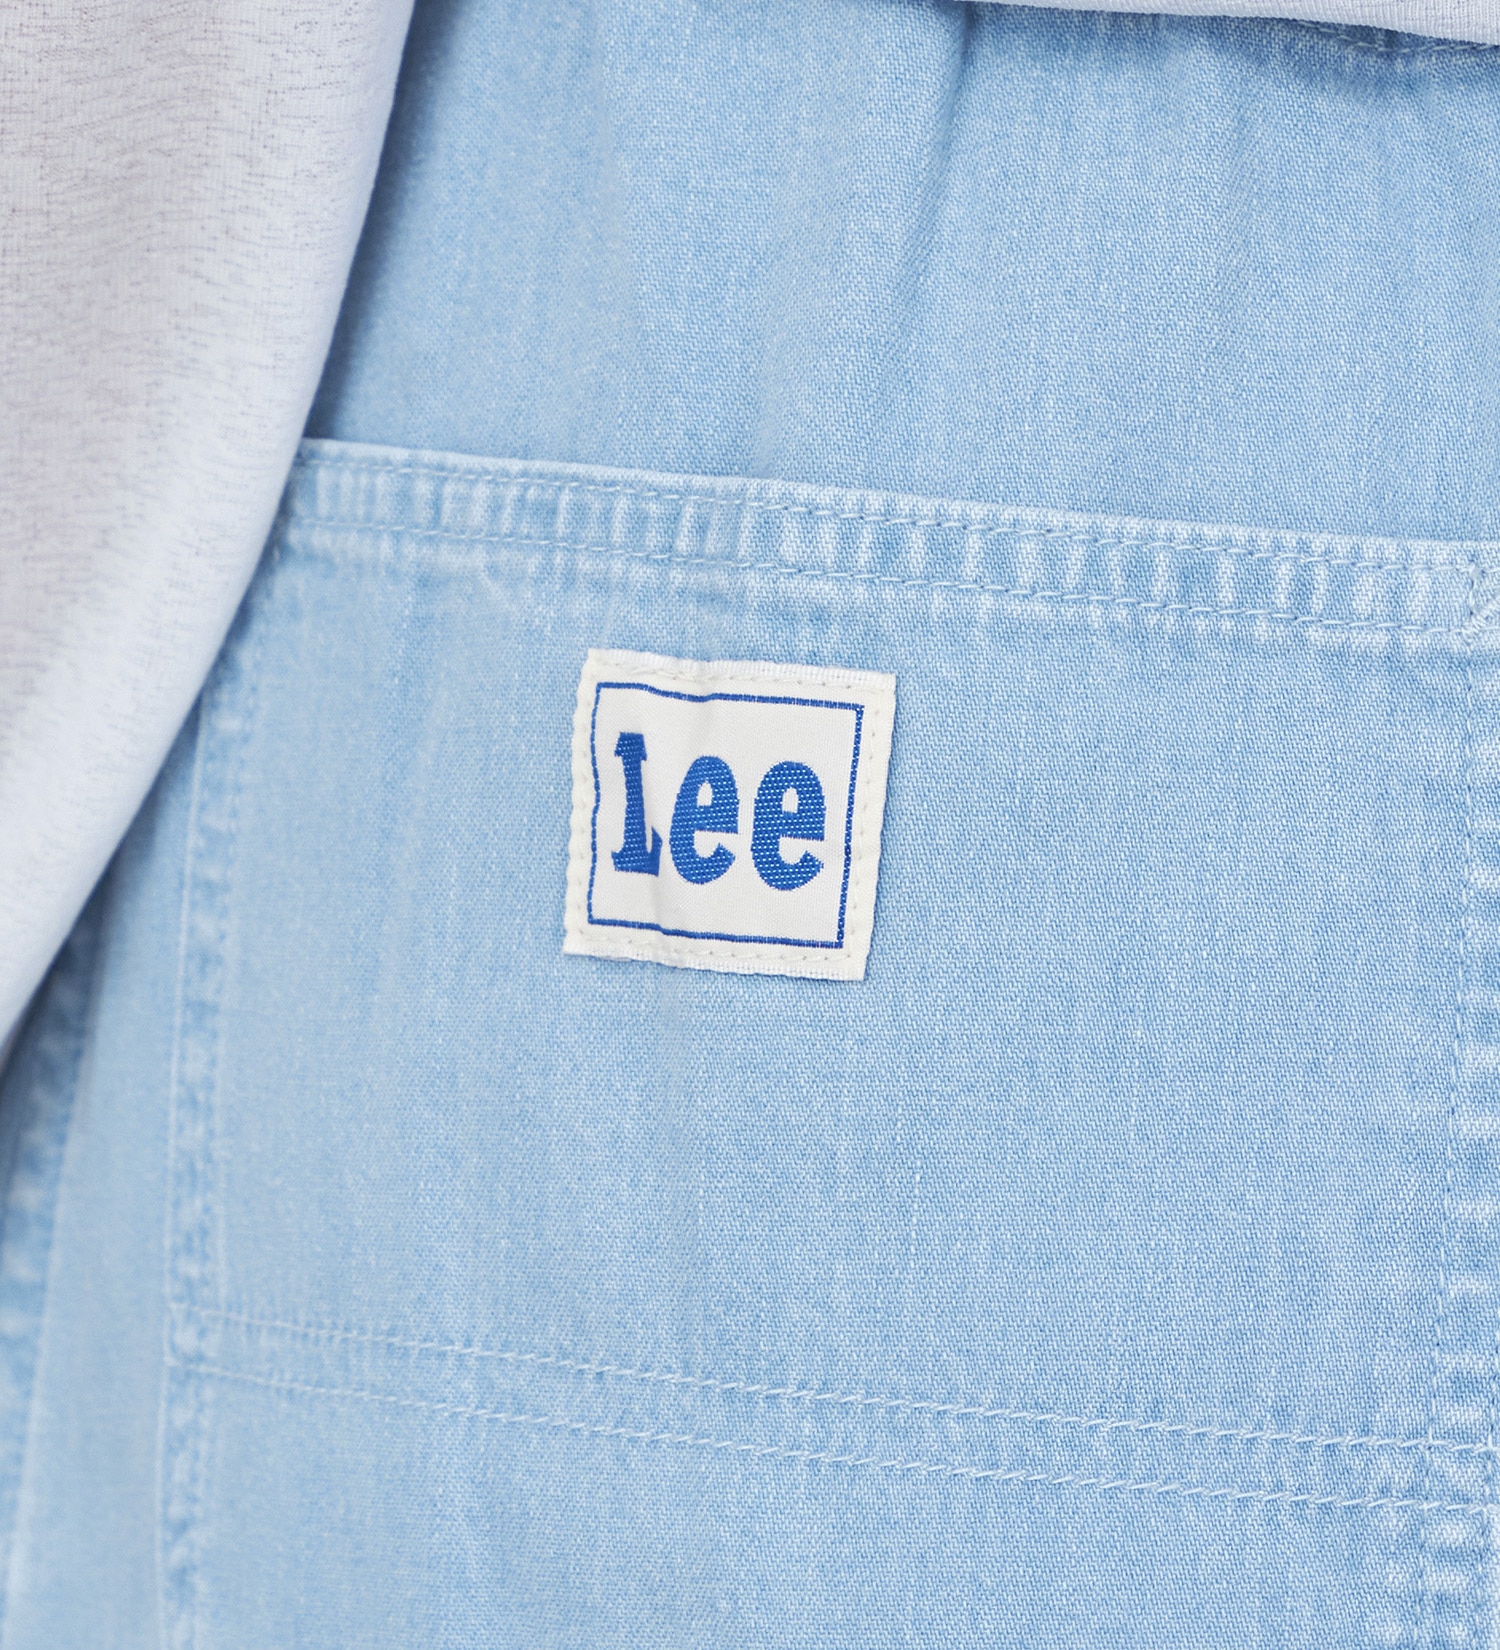 Lee(リー)の【GW SALE】イージーモッズスカート|スカート/スカート/レディース|淡色ブルー